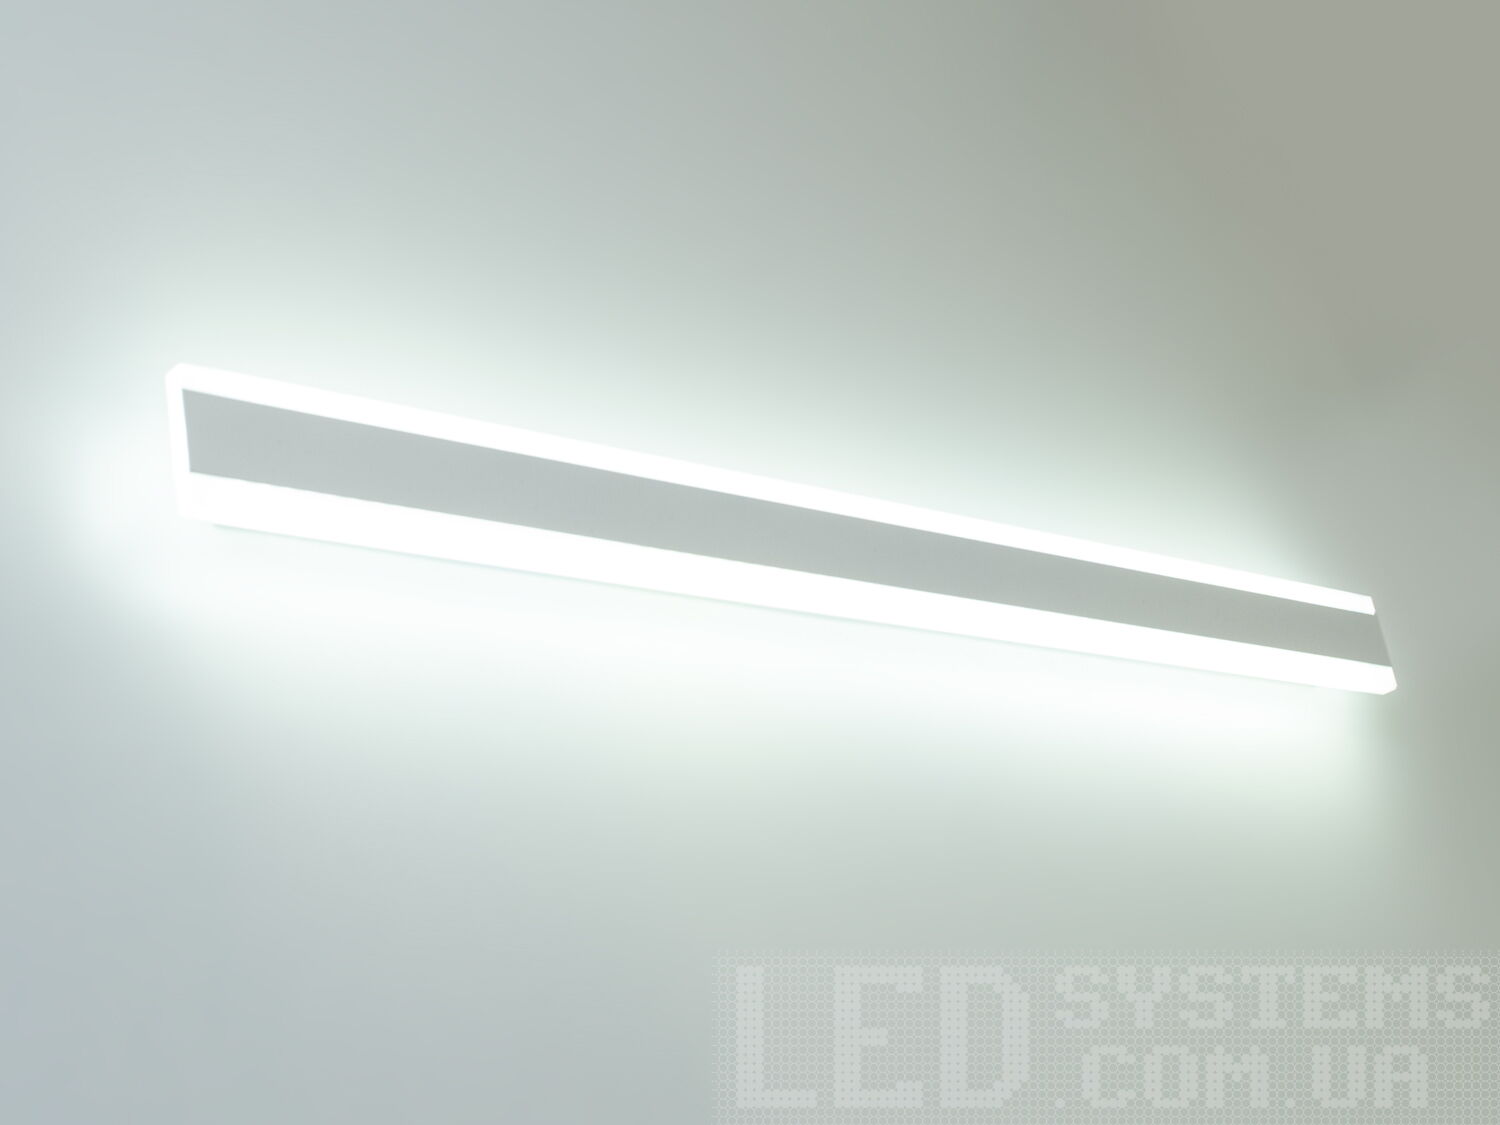 Світильник-планка з LED лампою, що обрамляє, з незвичайним виконання плафонів, що обрамляють LED лампи. LED світильник є ідеальним рішенням для акцентного (елементного) підсвічування в інтер'єрі - підсвічування дзеркал, картин, стінних ніш, особливих деталей інтер'єру і є не просто утилітарним світильником як звичайне лінійне підсвічування. Світильник має унікальні світлодіодні енергозберігаючі лампи. Які за дуже низької споживаної потужності створюють потужний світловий потік. Витончені накладні світлодіодні світильники призначені для створення яскравого світлодіодного освітлення з регульованою температурою кольору від теплого білого до холодного білого. Перемикання спектрів світіння світлодіодного світильника здійснюється простим вимкненням-вмиканням. Кріпиться до будь-яких видів поверхонь універсальним кріпленням-на планку.